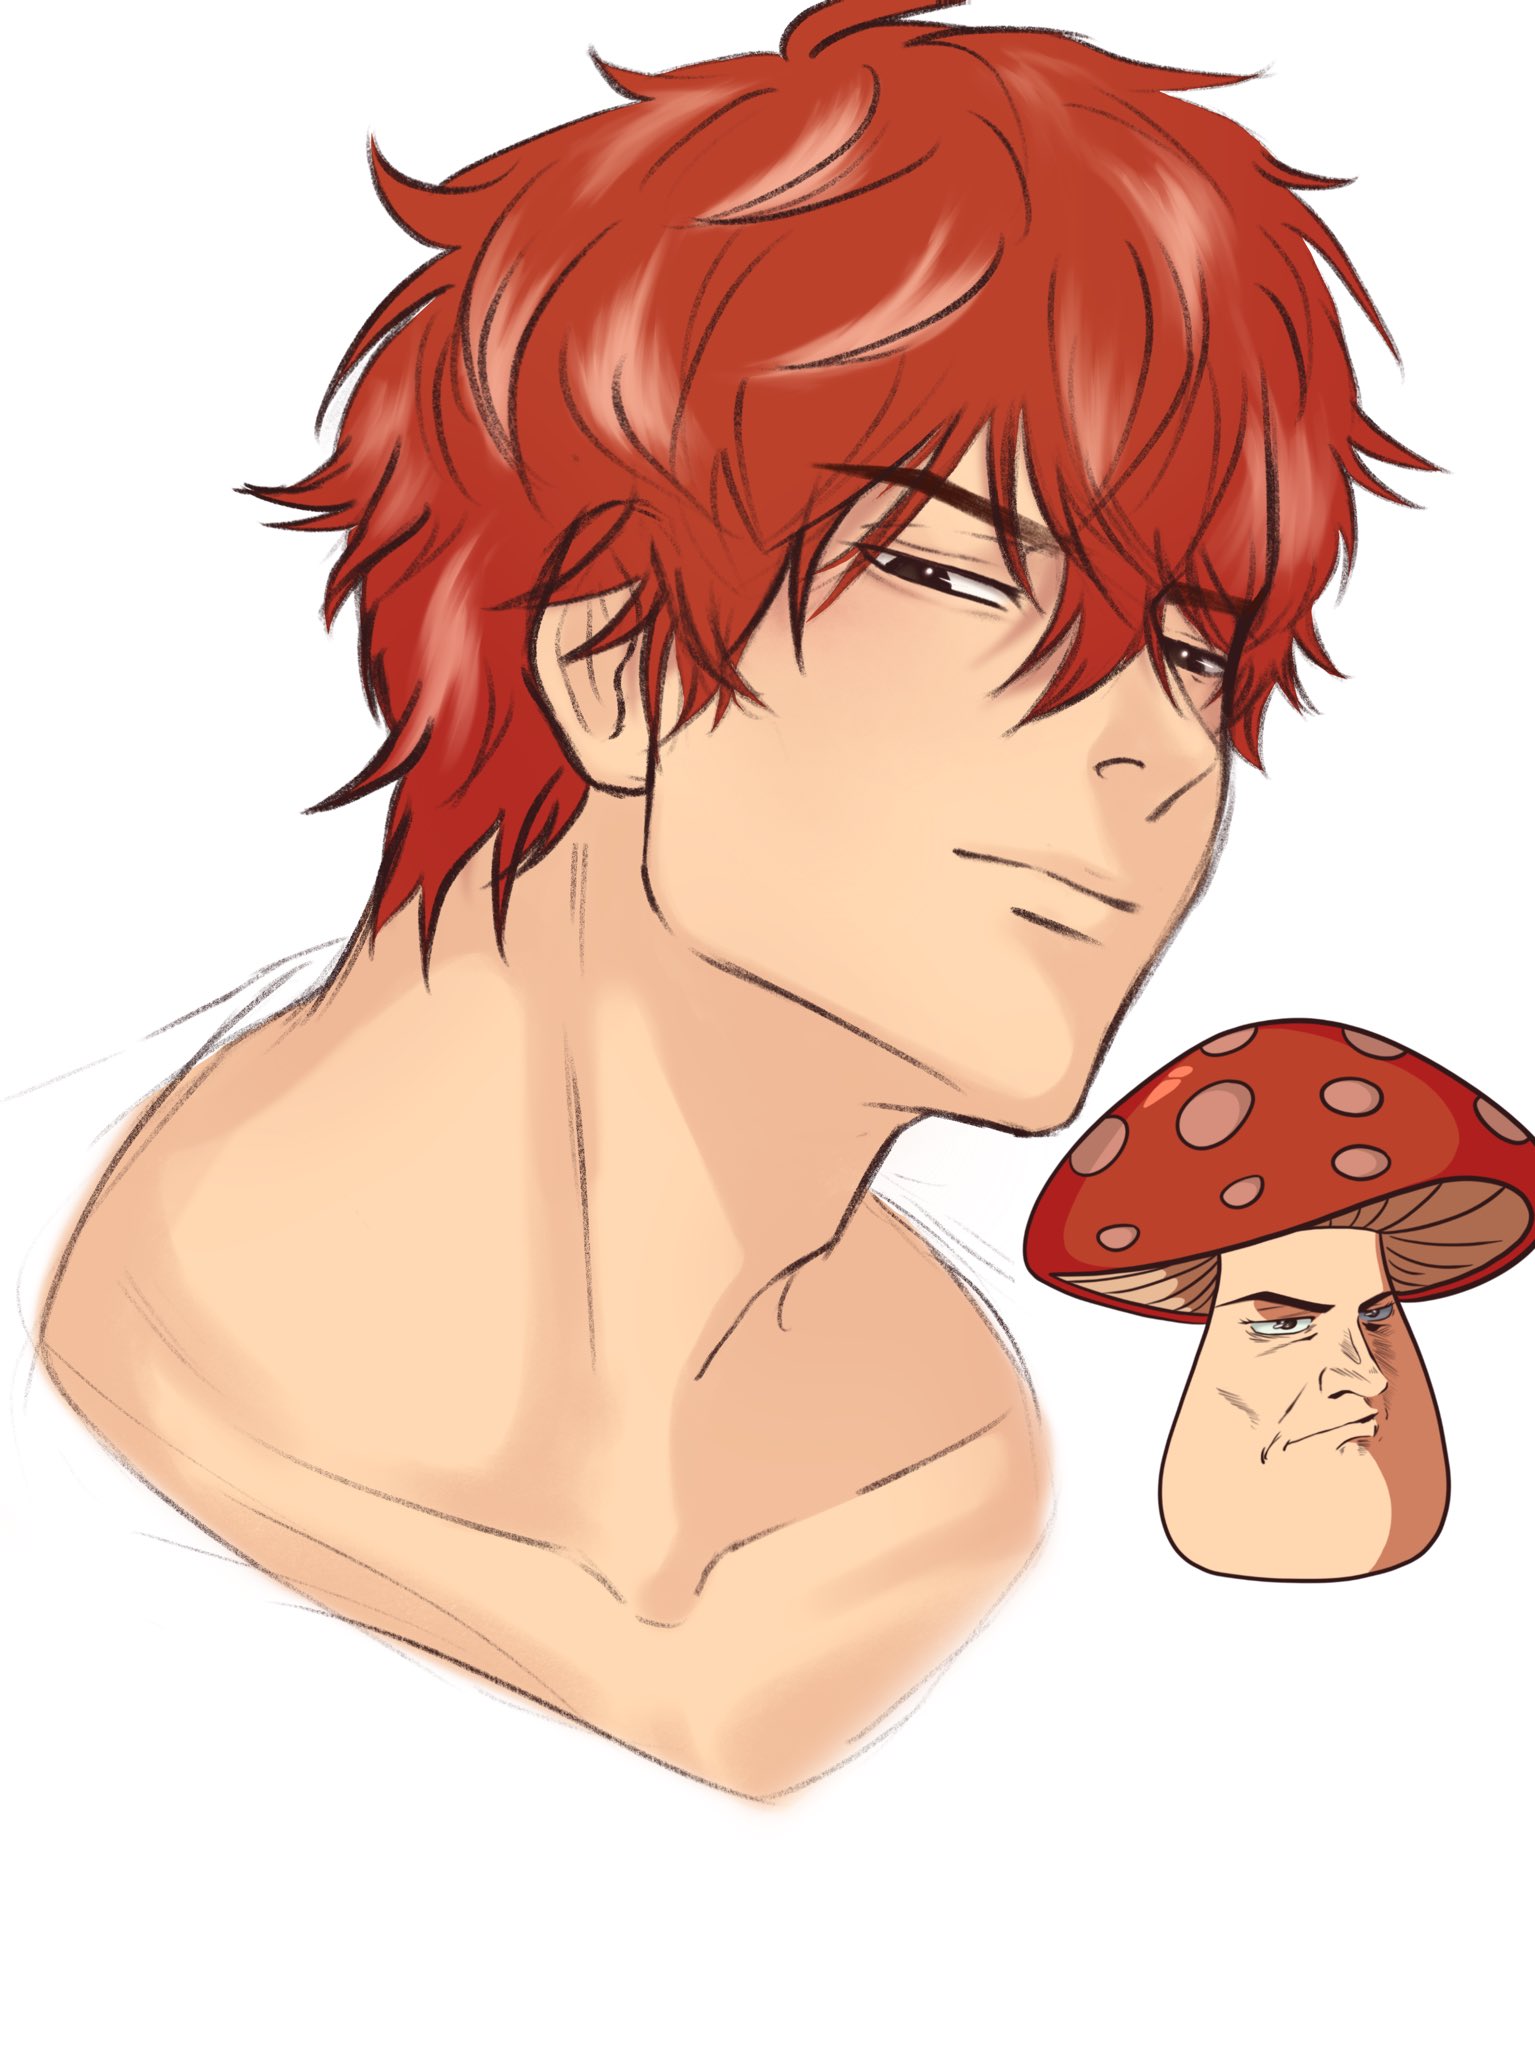 mushroom hat pfp | Cute drawings, Cute profile pictures, Cute anime pics